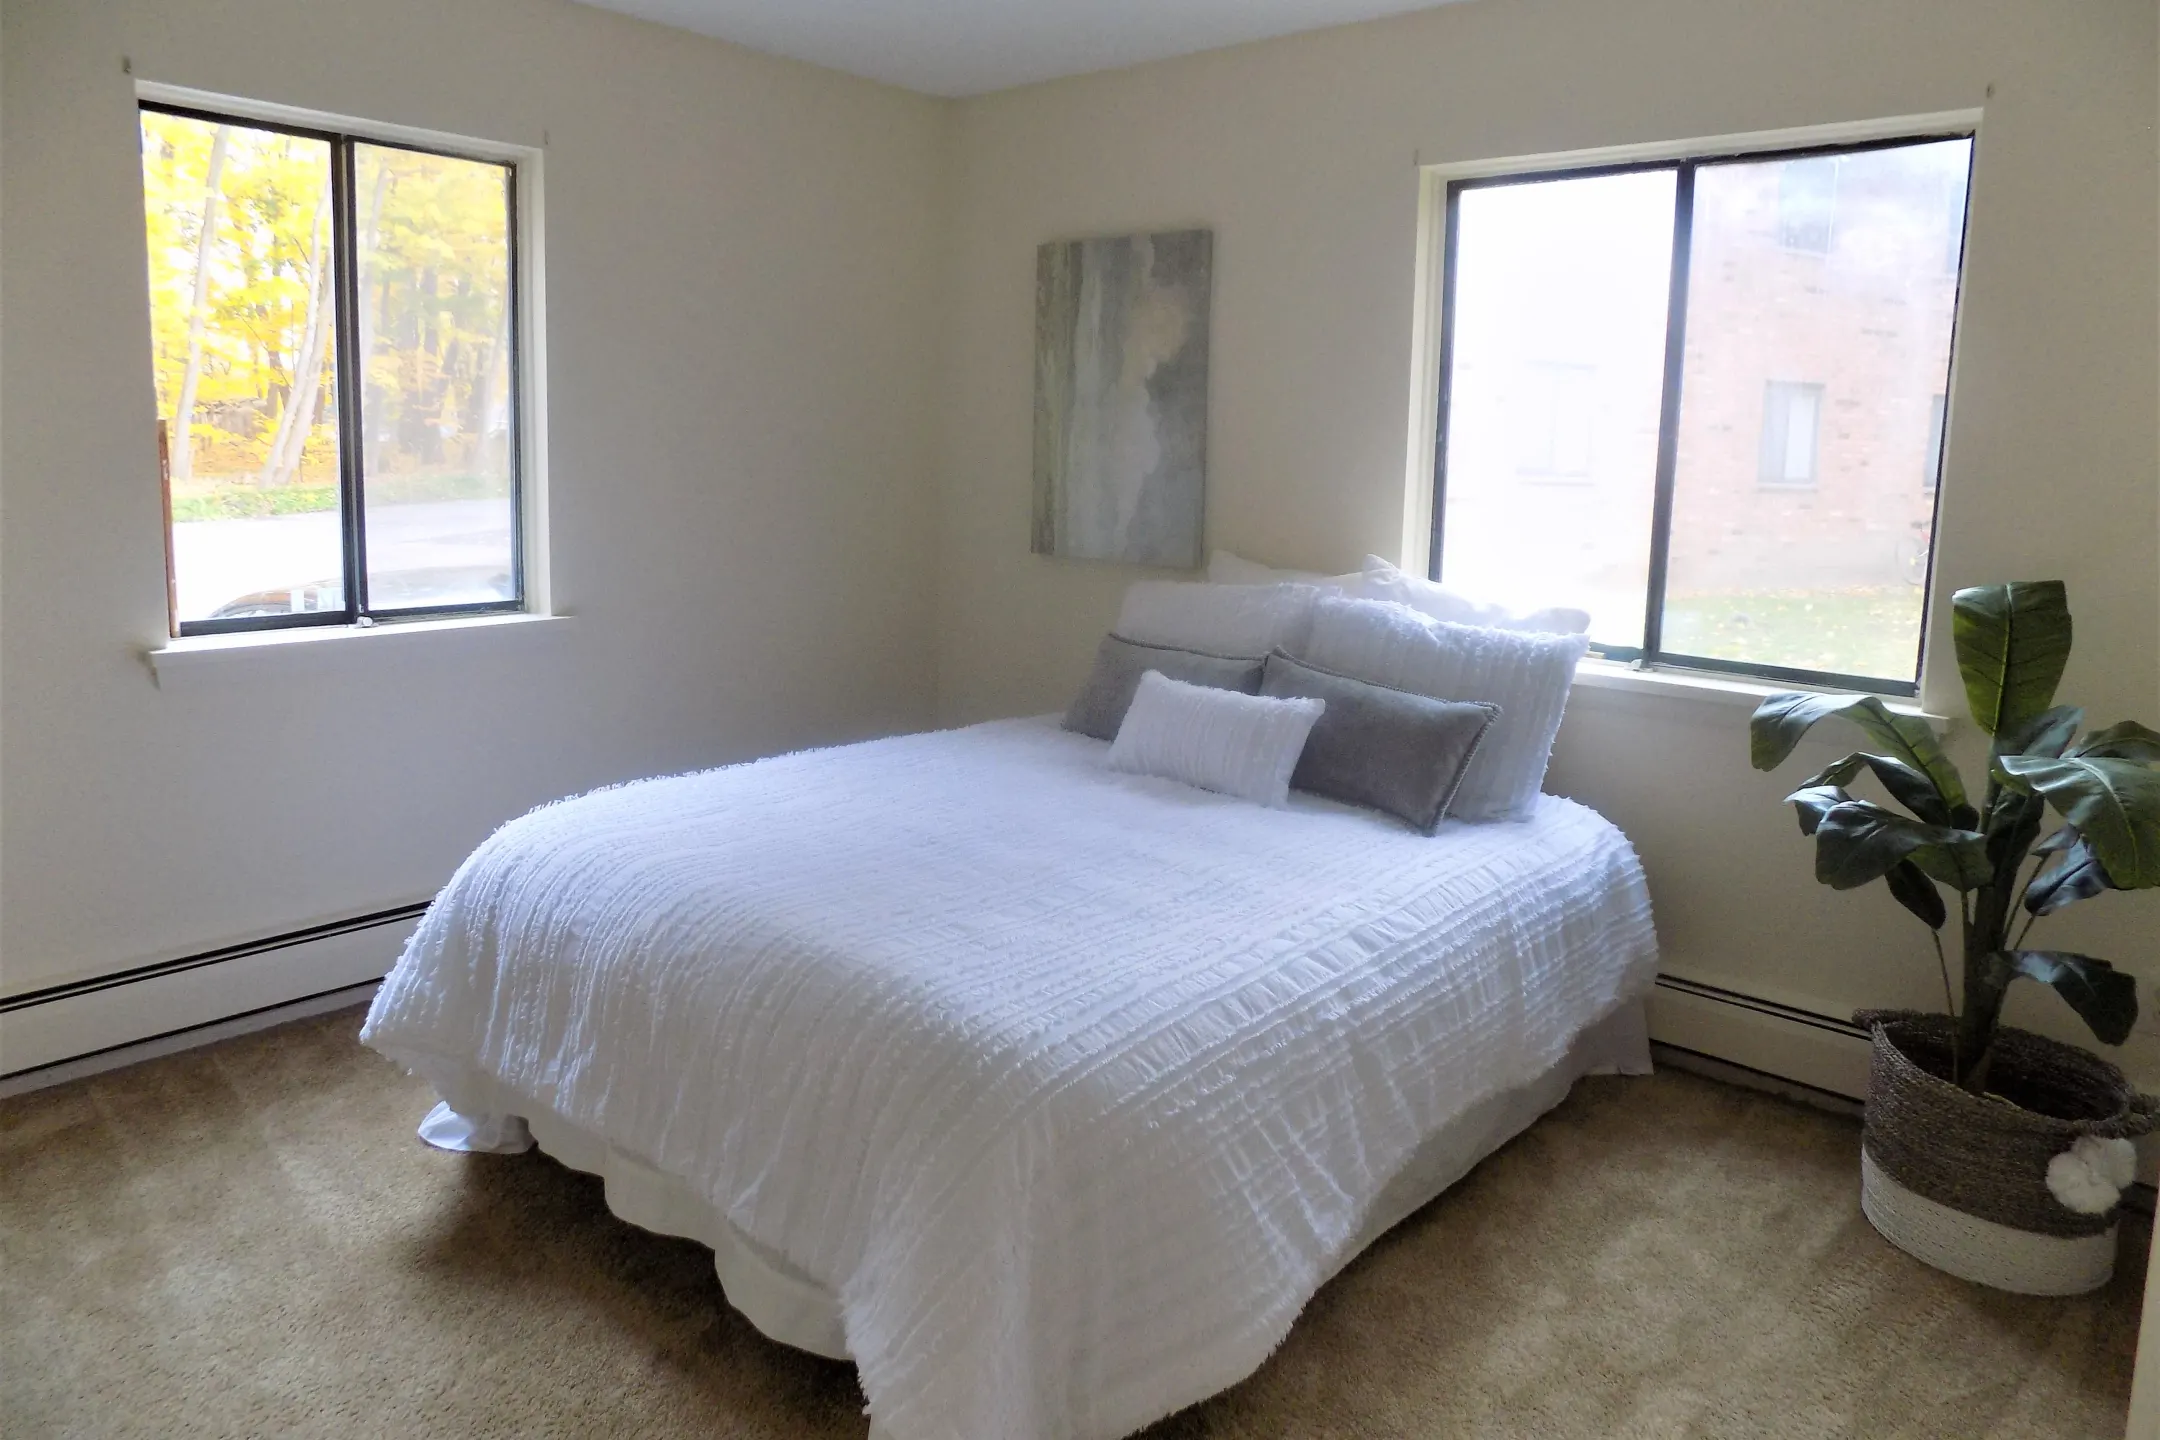 Bedroom - Royal Apartments - Le Roy, NY